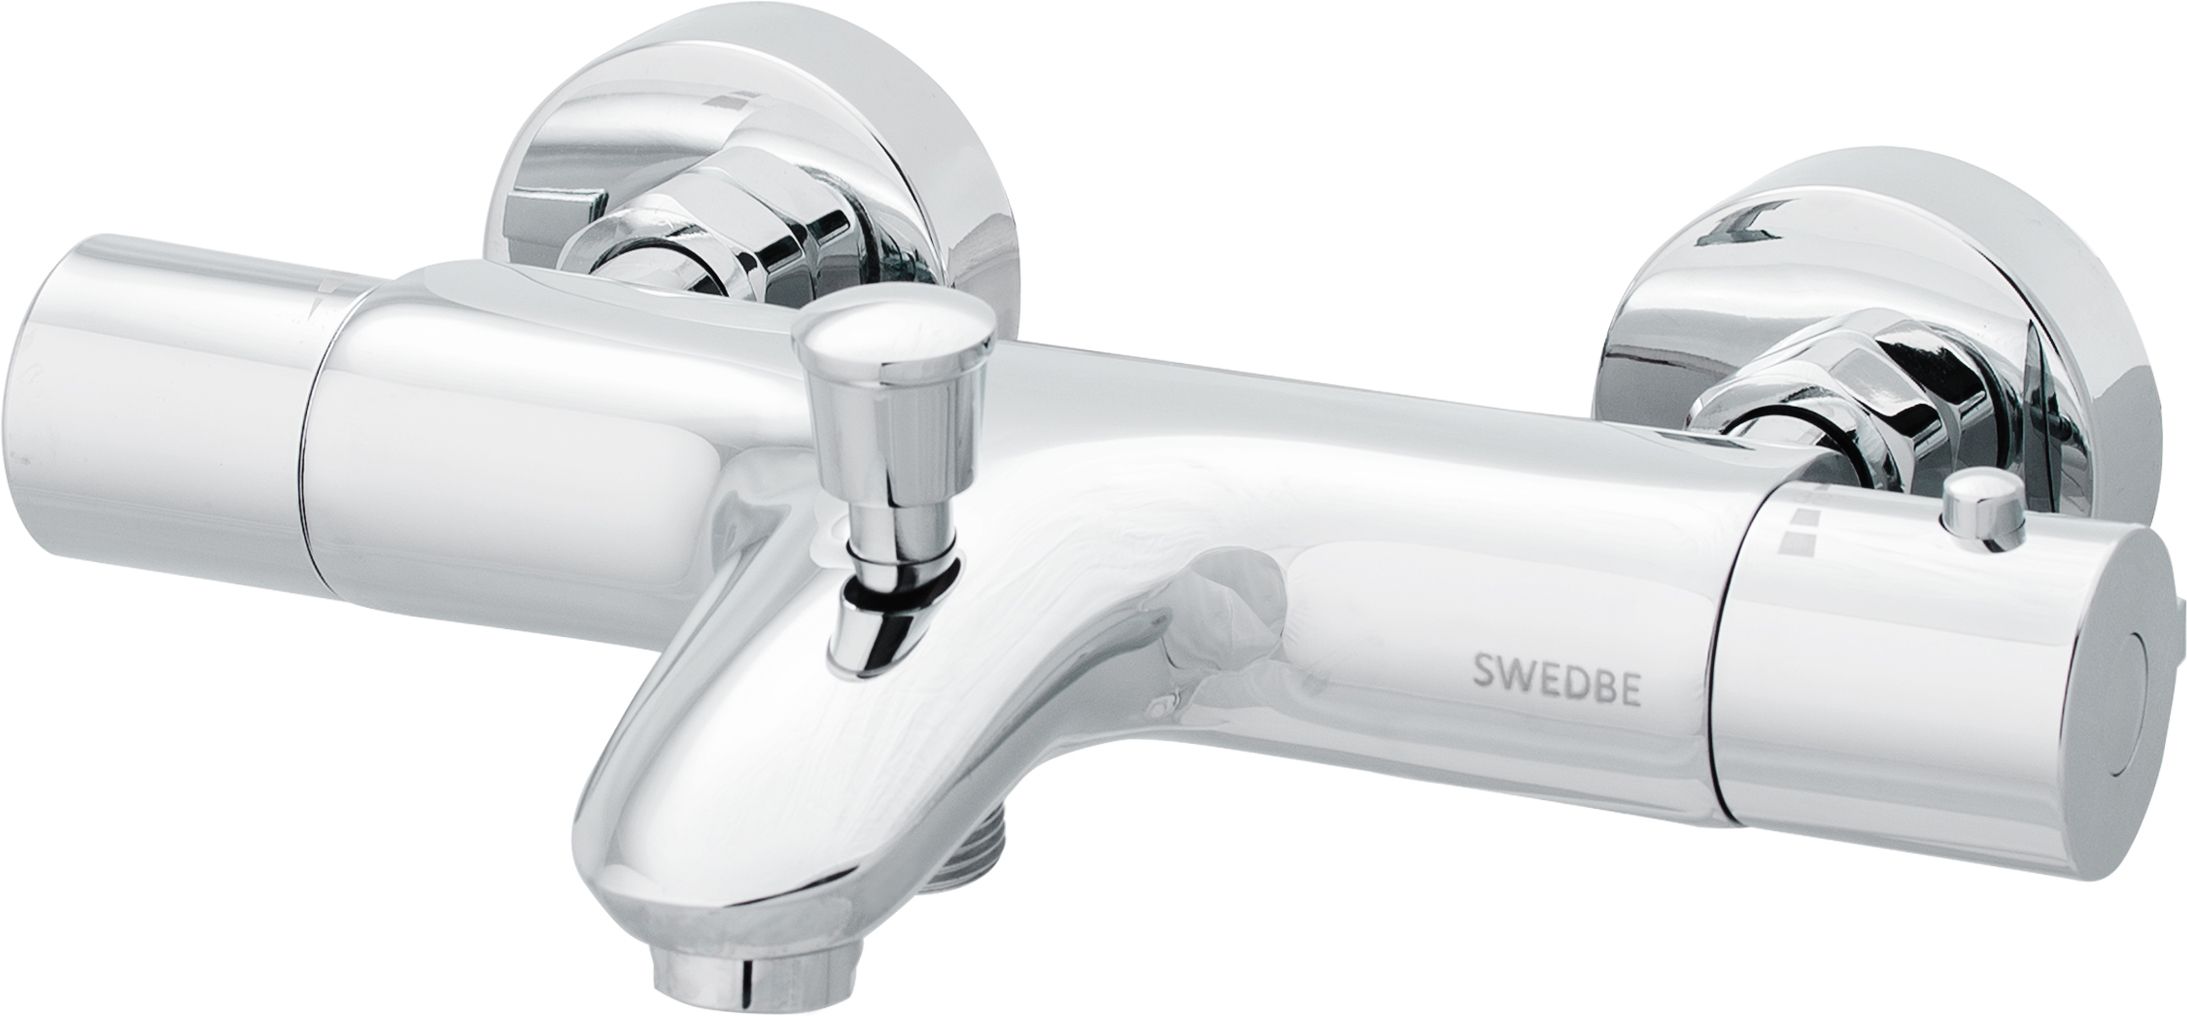 Смеситель для ванной swedbe. Swedbe термостатический смеситель. Смеситель для душа Swedbe. Swedbe Mercury. Swedbe смесители для ванной.